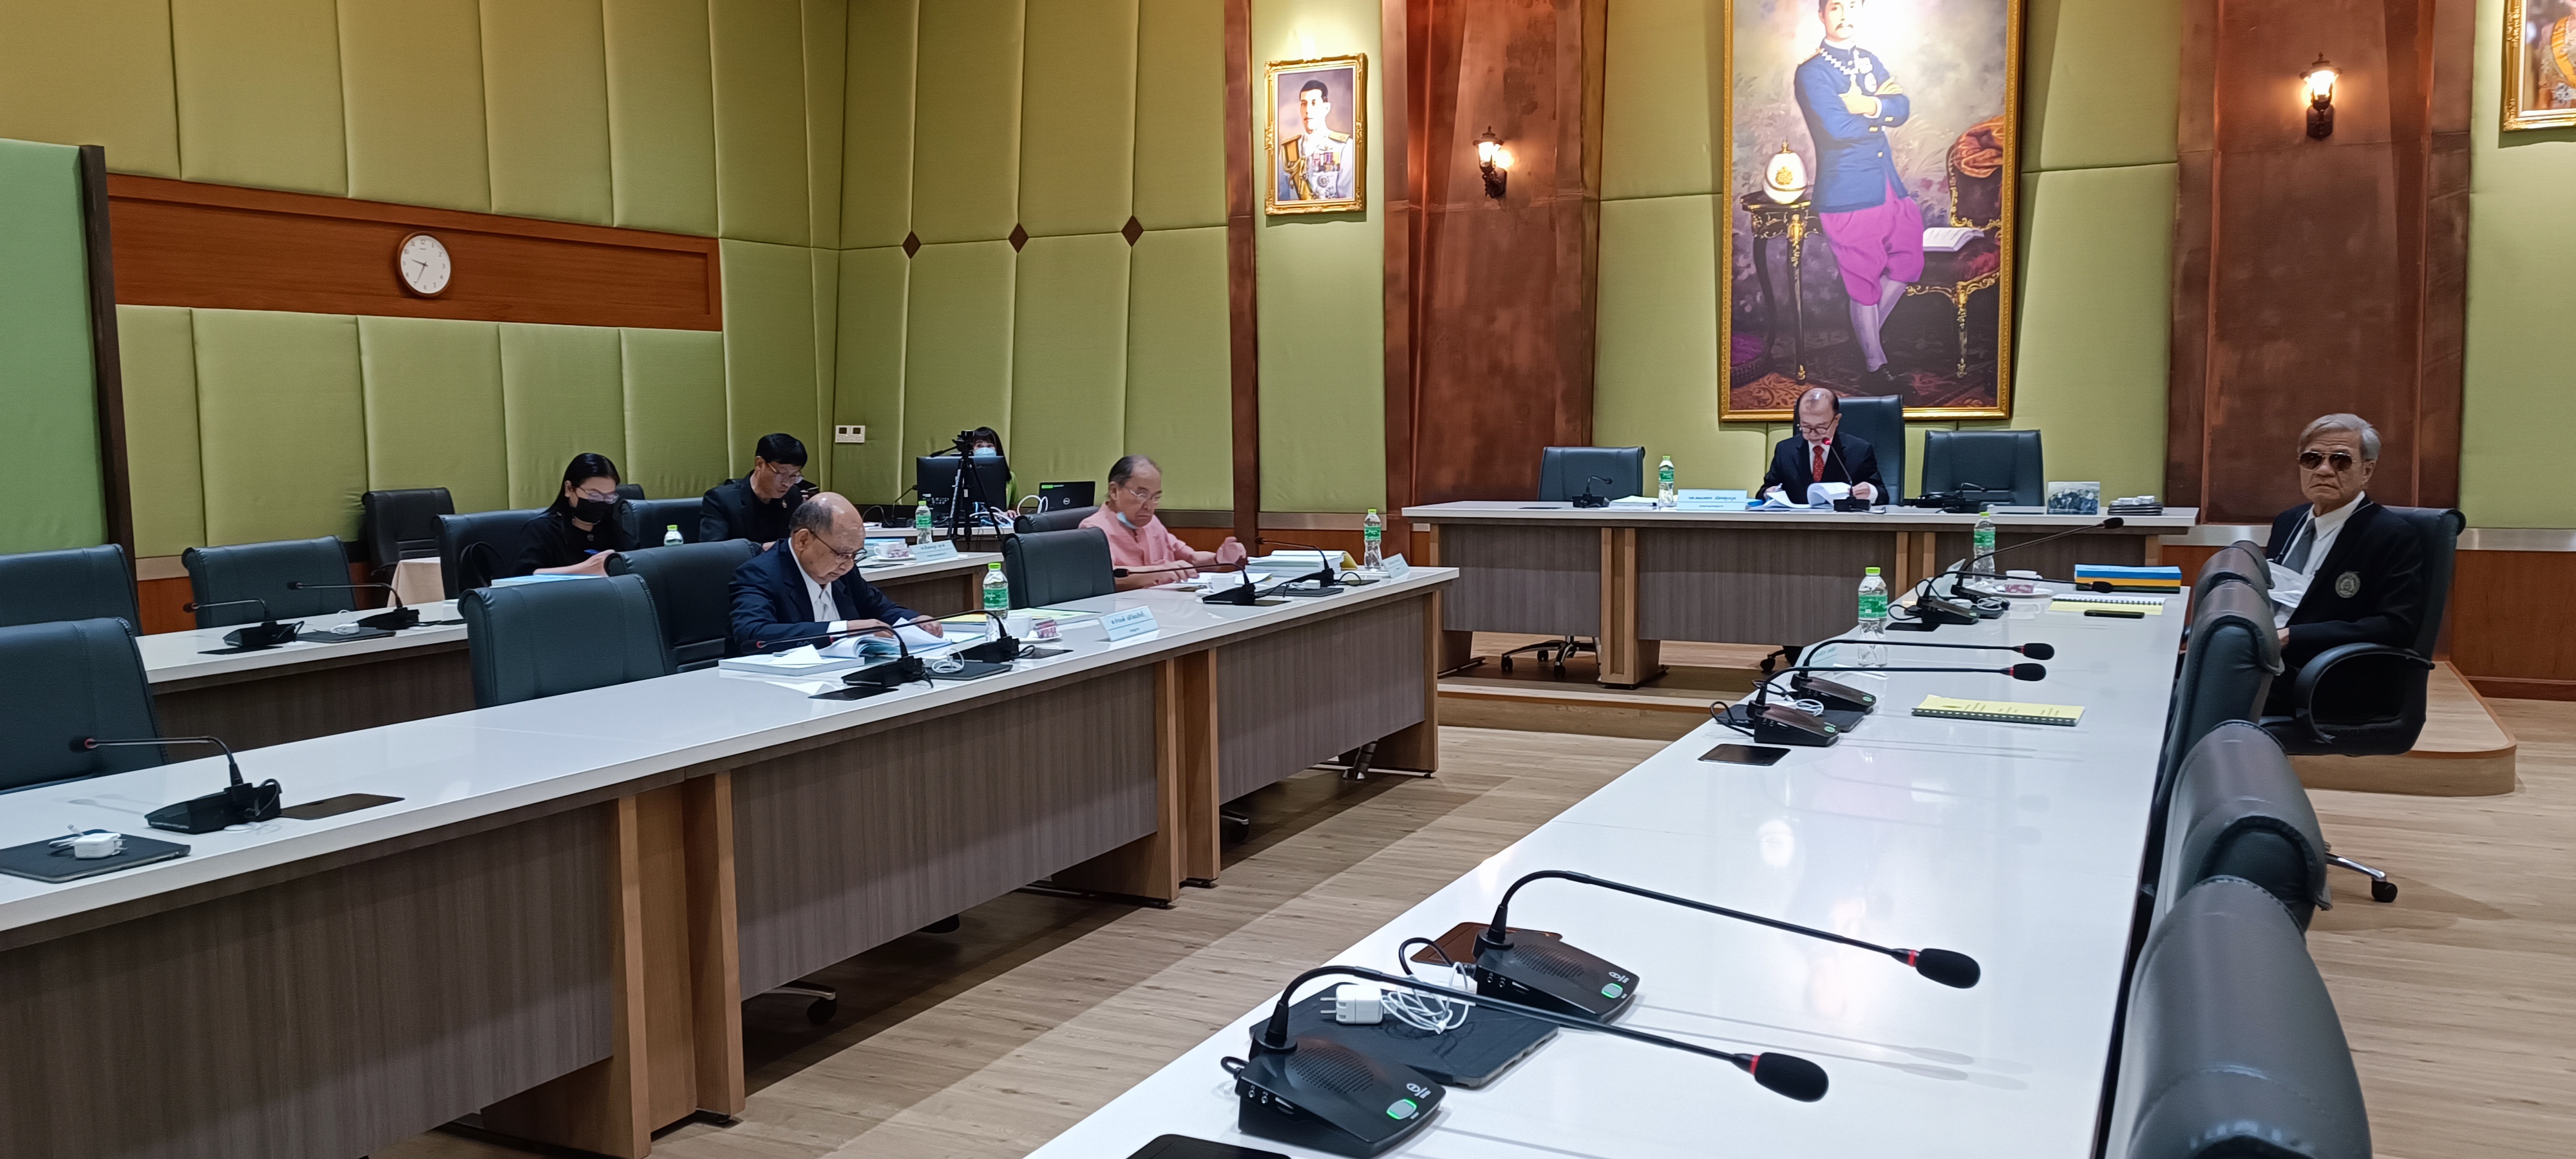 ประชุมคณะกรรมการดำเนินงานของสภามหาวิทยาลัย ฝ่ายกลั่นกรองหลักสูตรและวิชาการ ครั้งที่ 3/2566 วันพุธที่ 29 มีนาคม 2566